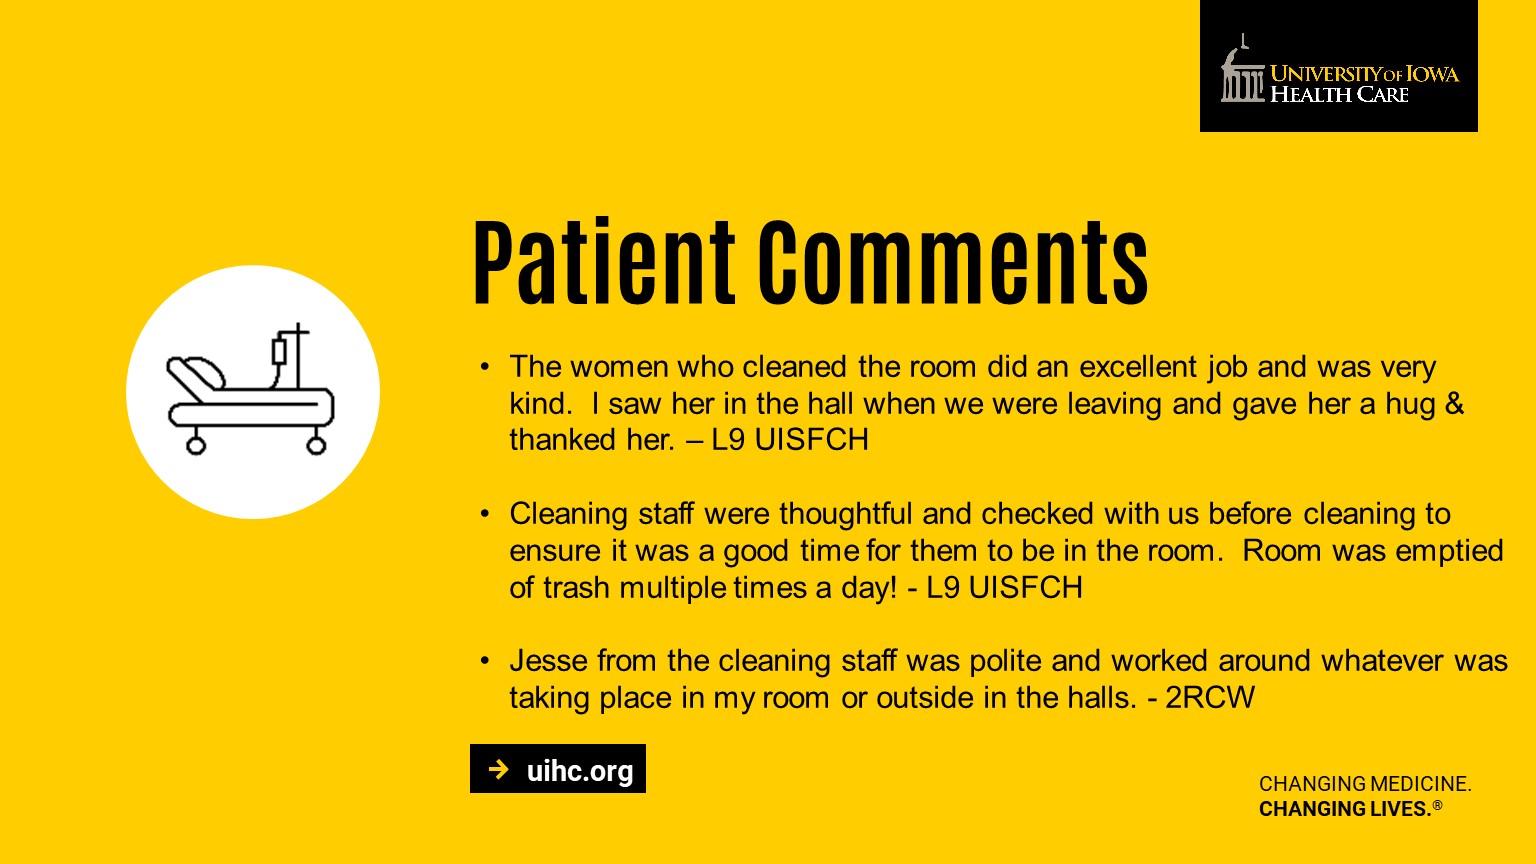 Patient Comments 11/2